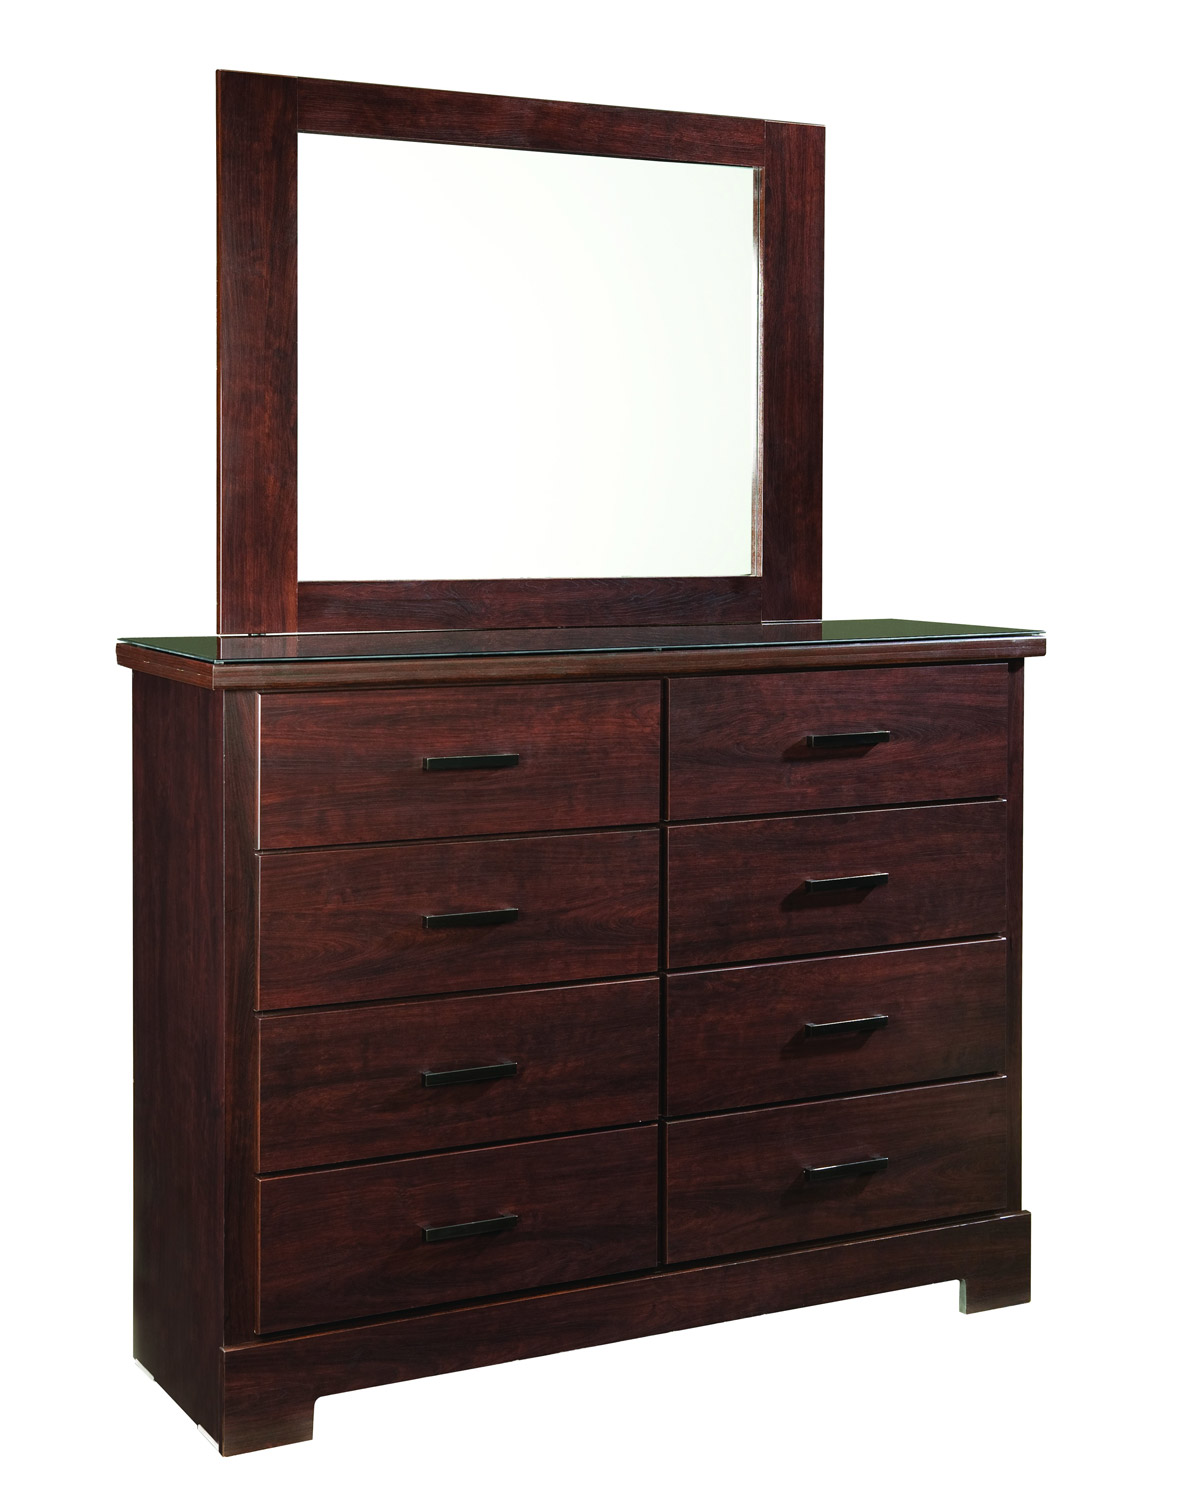 Global Furniture USA Leah Dresser - Engineered Wood/Paper Veneer - Dark Cherry Merlot